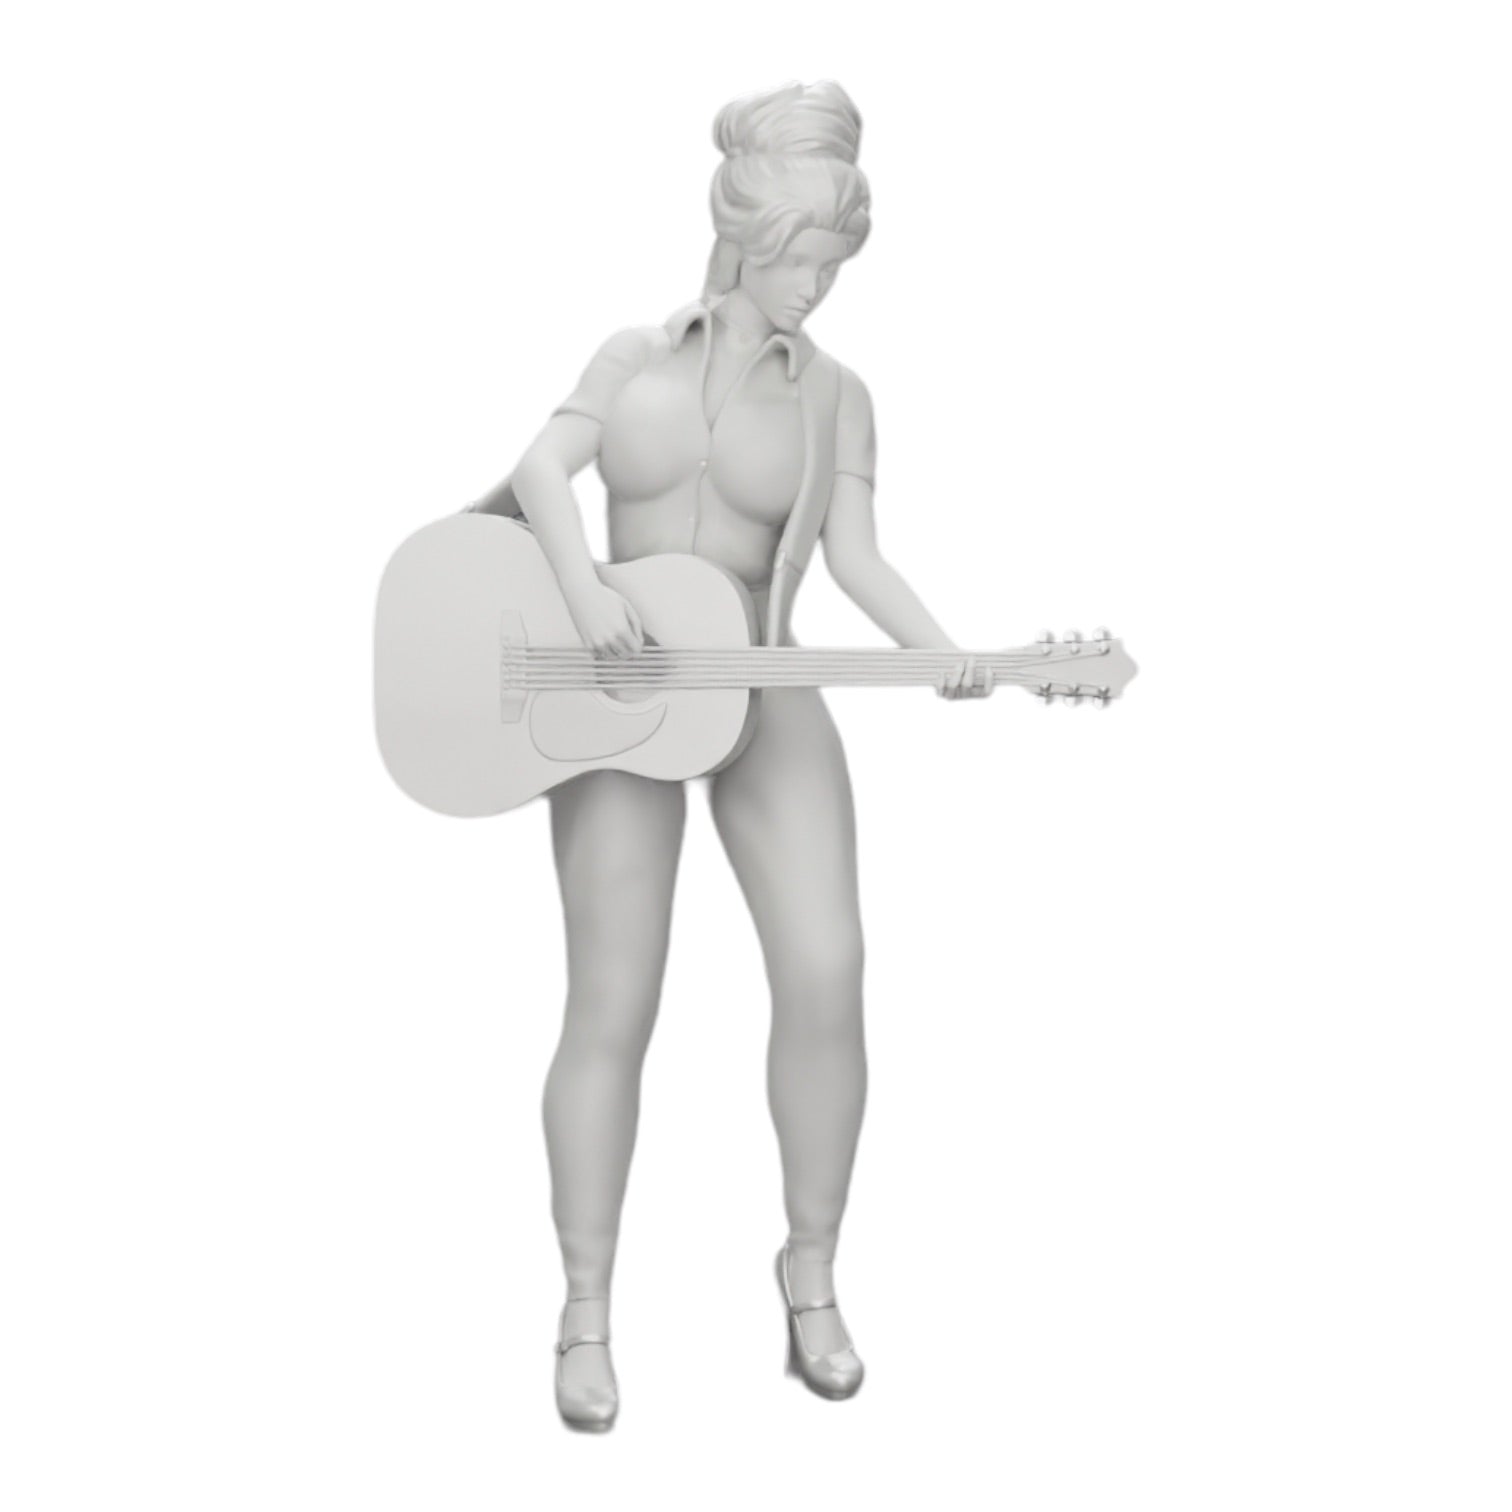 Diorama Modellbau Produktfoto 0: Junge Frau/ Musikerin auf der Bühne spielt Akustikgitarre (Ref Nr. A13)